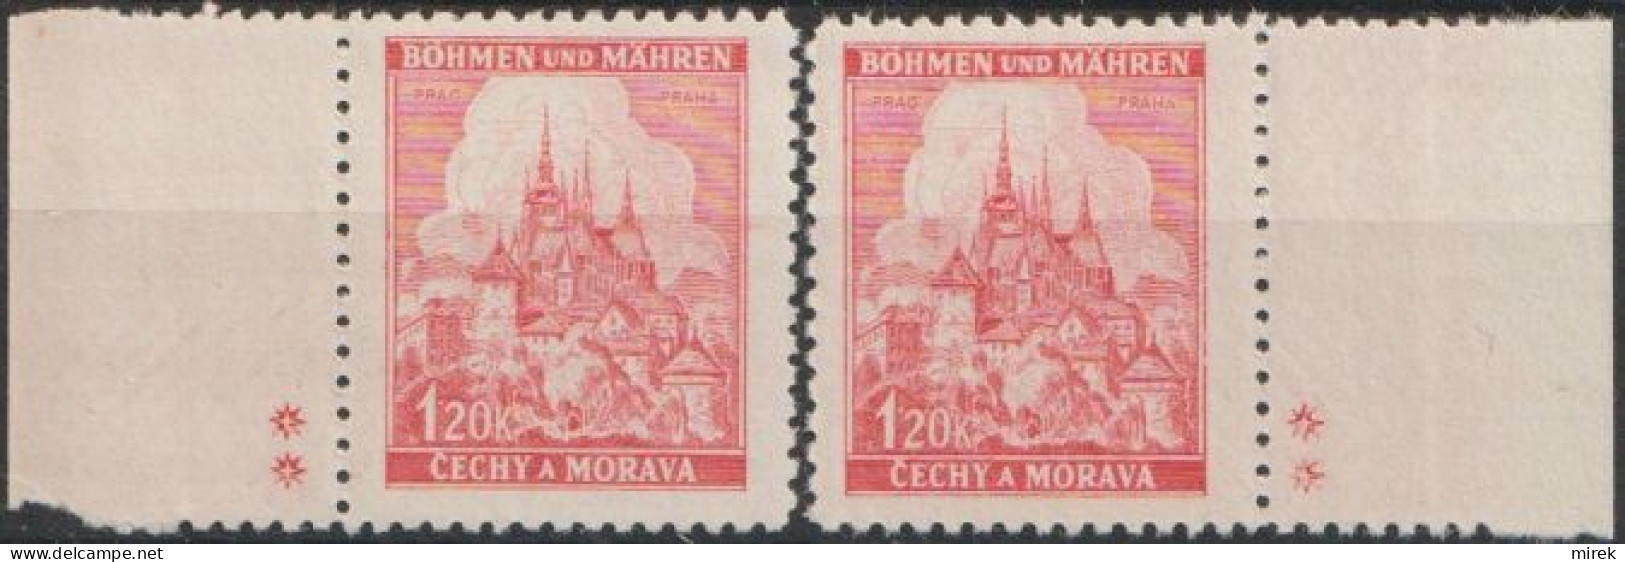 014/ Pof. 57, Border Stamps, Plate Mark ++ - Ungebraucht